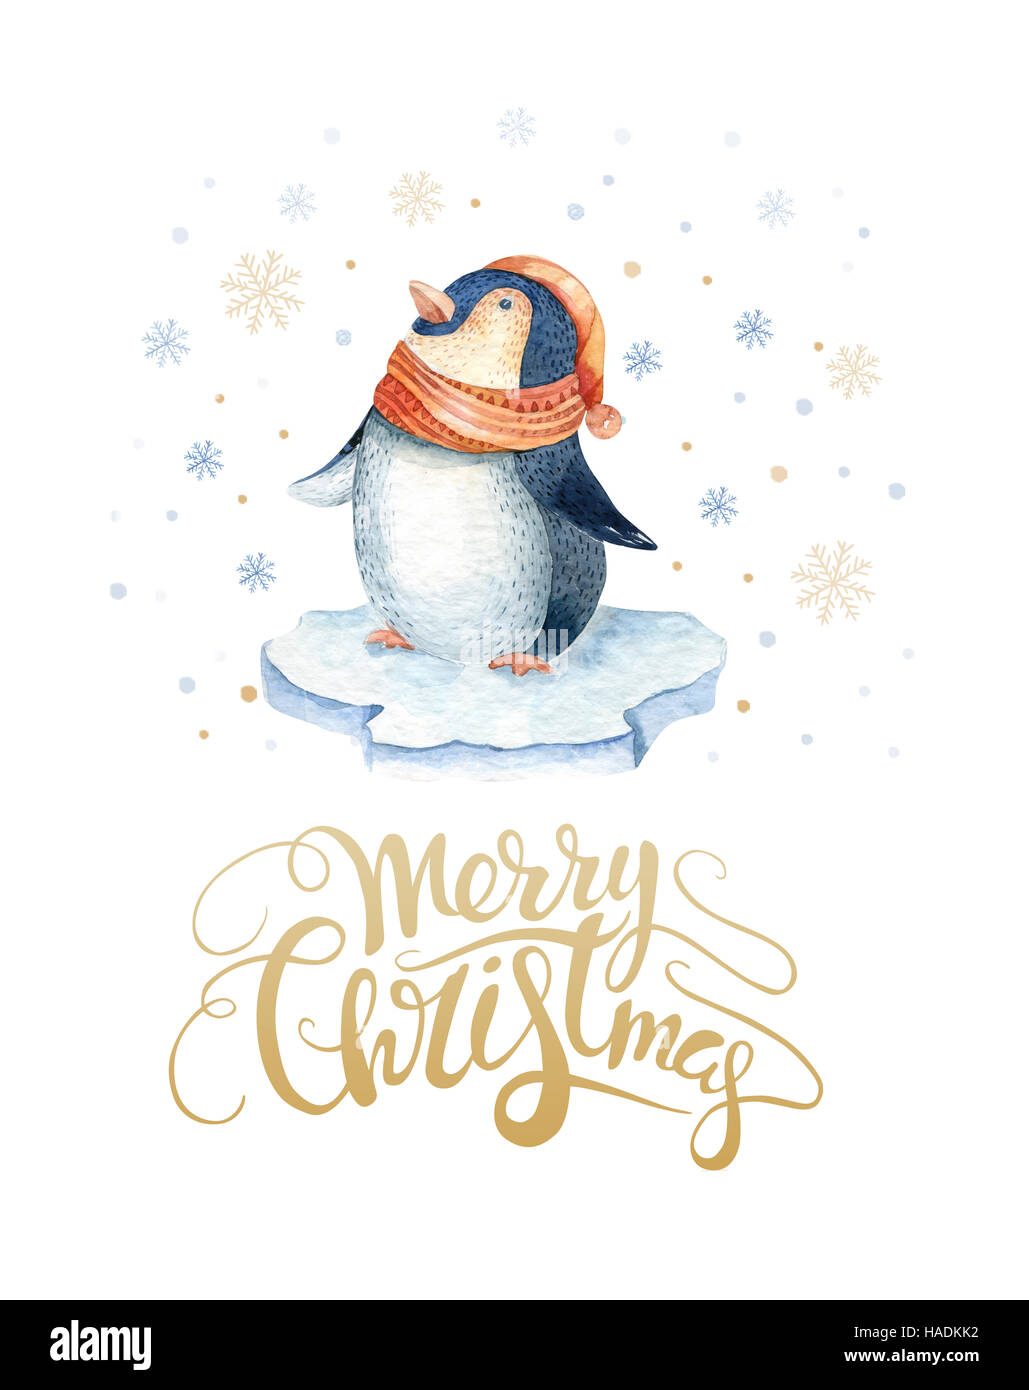 Frohe Weihnachten-Schriftzug mit Aquarell lustige Pinguin. Neujahrskarte  Stockfotografie - Alamy